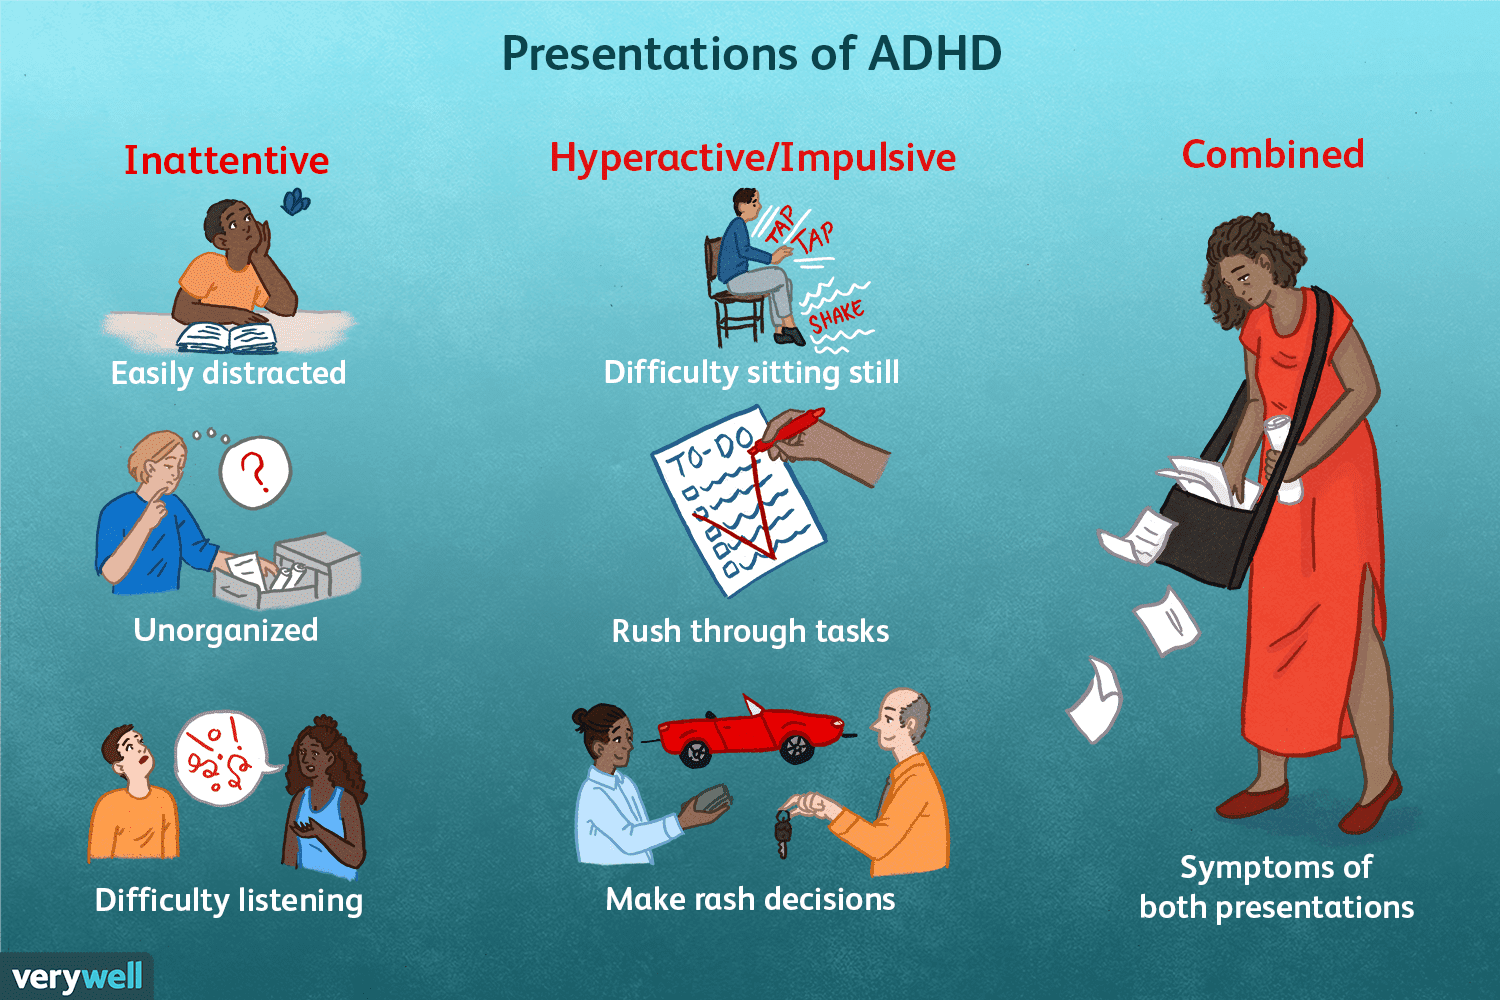 അമിത ടീവി കാണൽ കുട്ടികളിലെ ADHD കൂട്ടുമോ..? എന്താണ് ADHD അഥവാ അറ്റൻഷൻ ഡെഫിസിറ്റ്‌ ഹൈപ്പർ ആക്റ്റീവ് ഡിസോർഡർ.